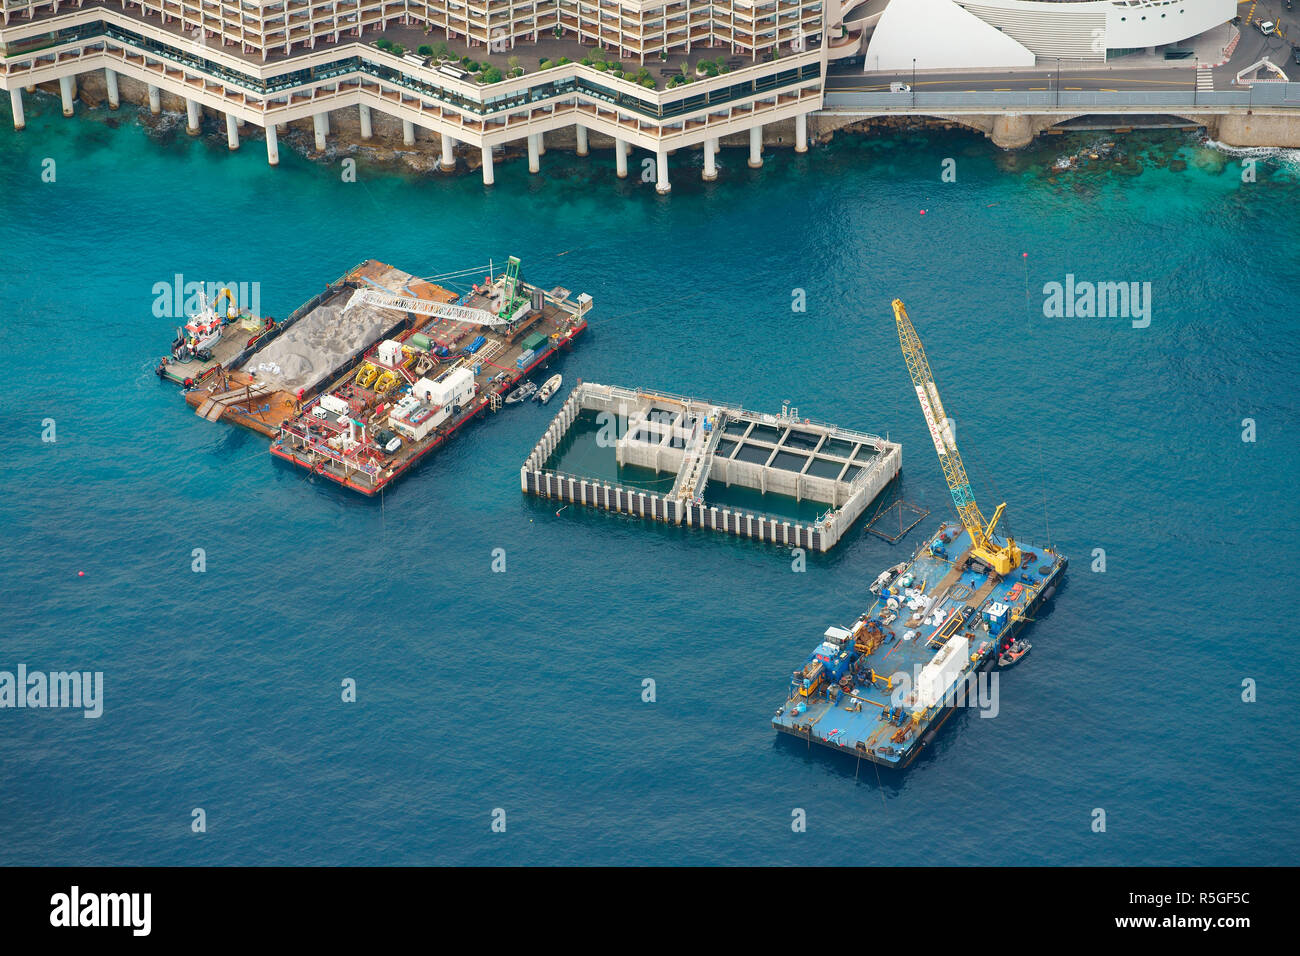 VUE AÉRIENNE. Caisson flottant en béton à utiliser pour un grand projet d'extension de terre. Quartier de l'Anse du Portier, Principauté de Monaco. Banque D'Images